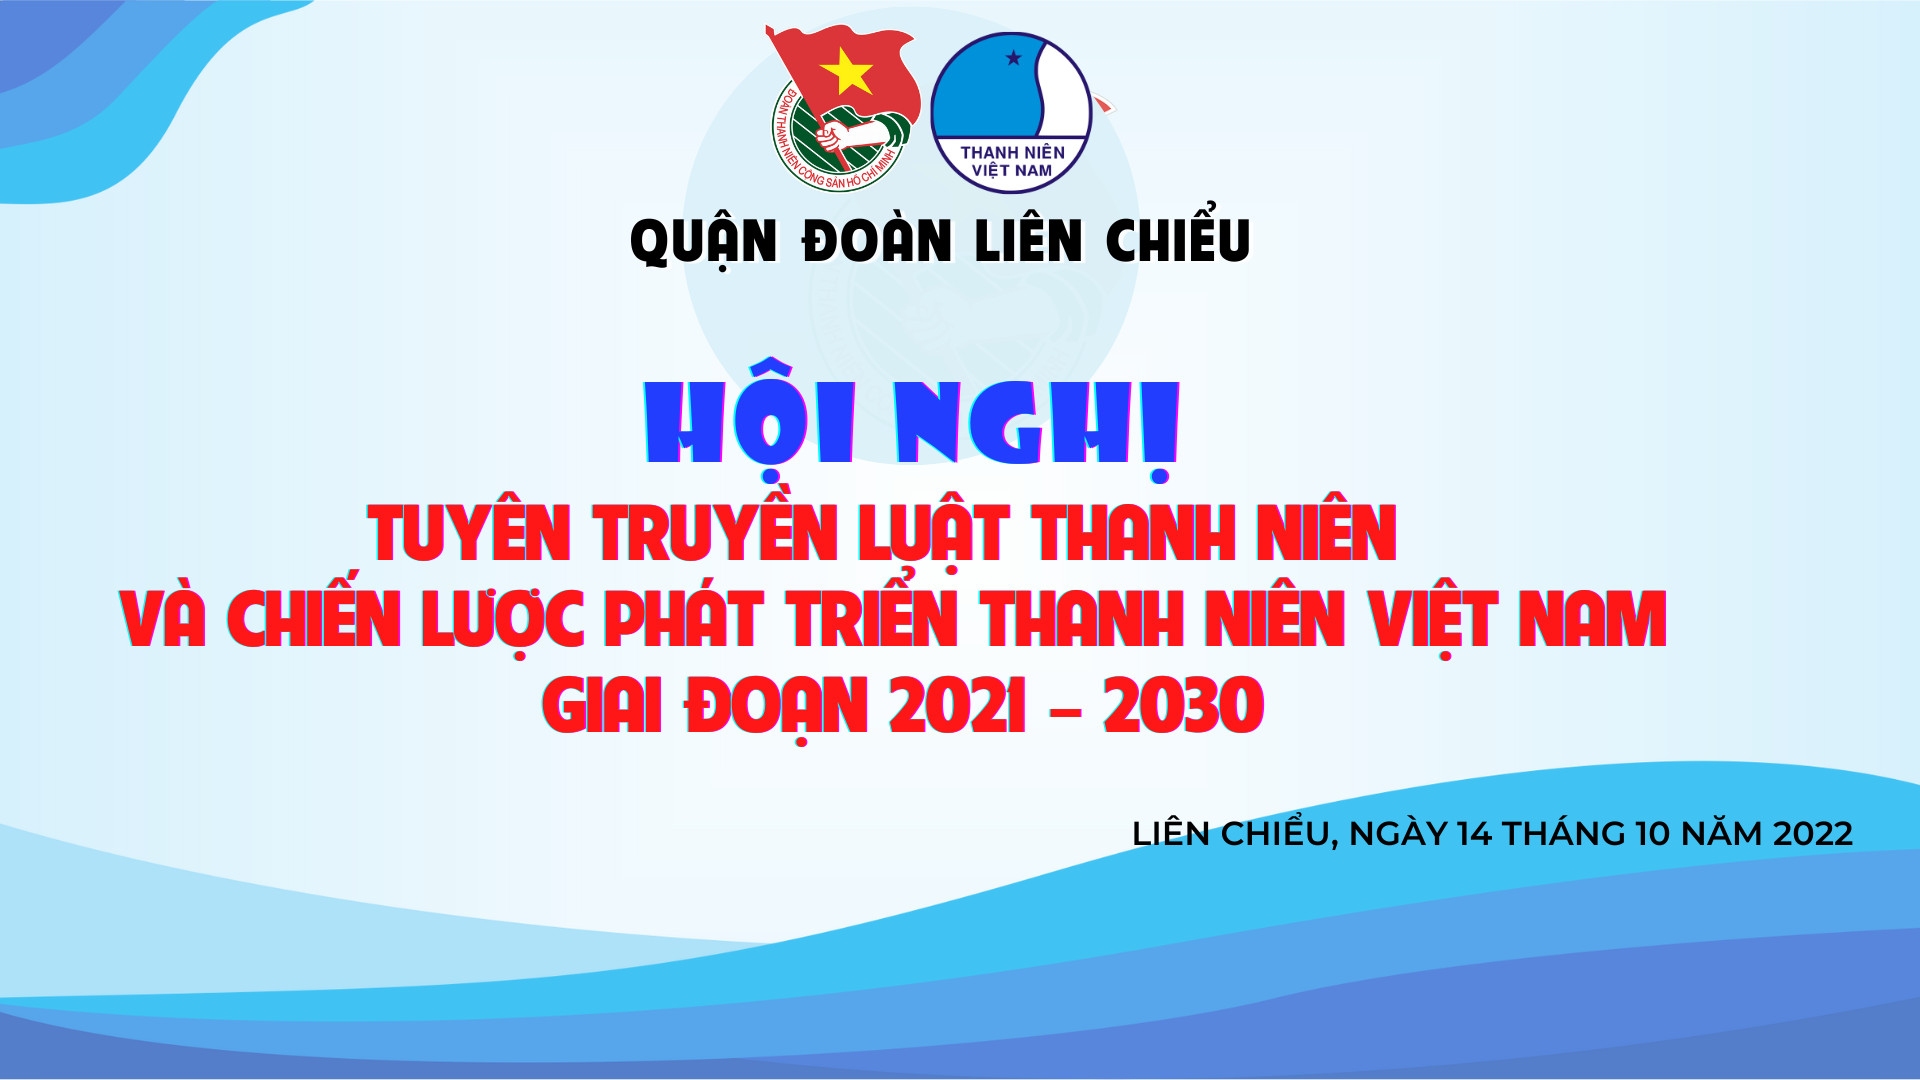 Tuyên truyền Luật Thanh niên và Chiến lược phát triển thanh niên Việt Nam cho cán bộ Đoàn năm 2022